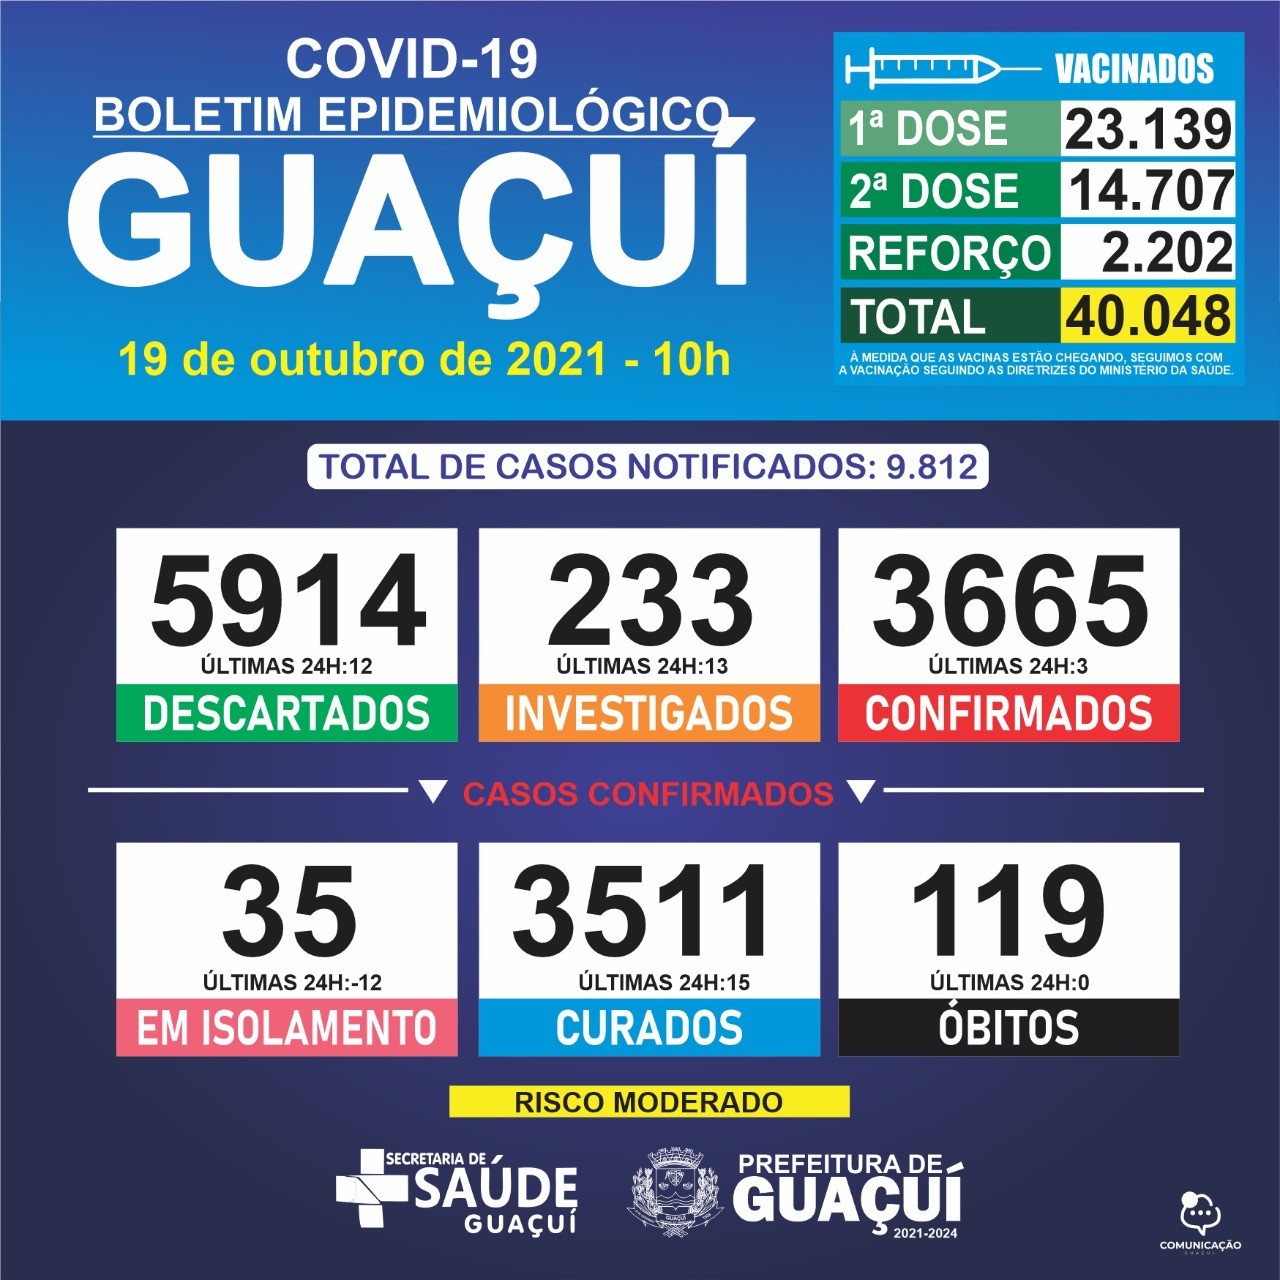 Boletim Epidemiológico 19/10/2021: Guaçuí registra 3 casos confirmados e 15 curados nas últimas 24 horas